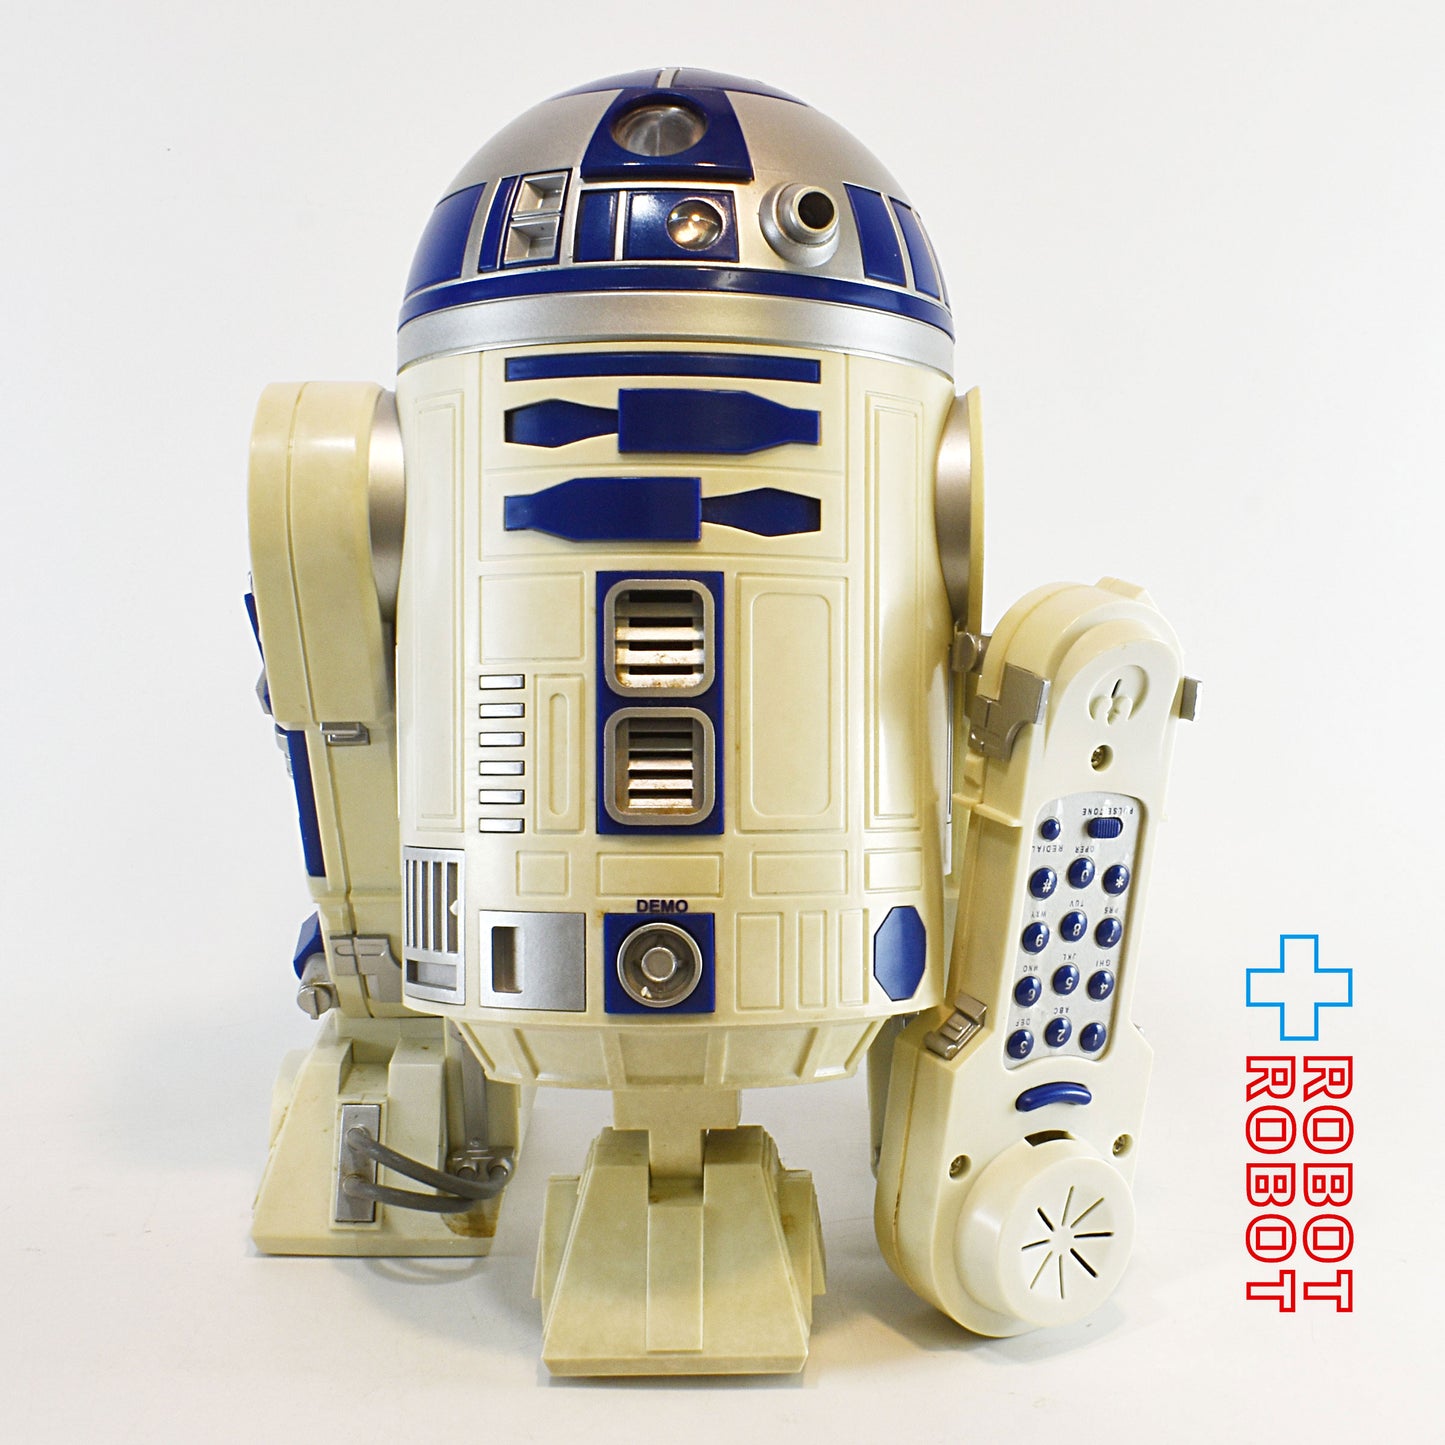 テレマニア スター・ウォーズ R2-D2 電話機